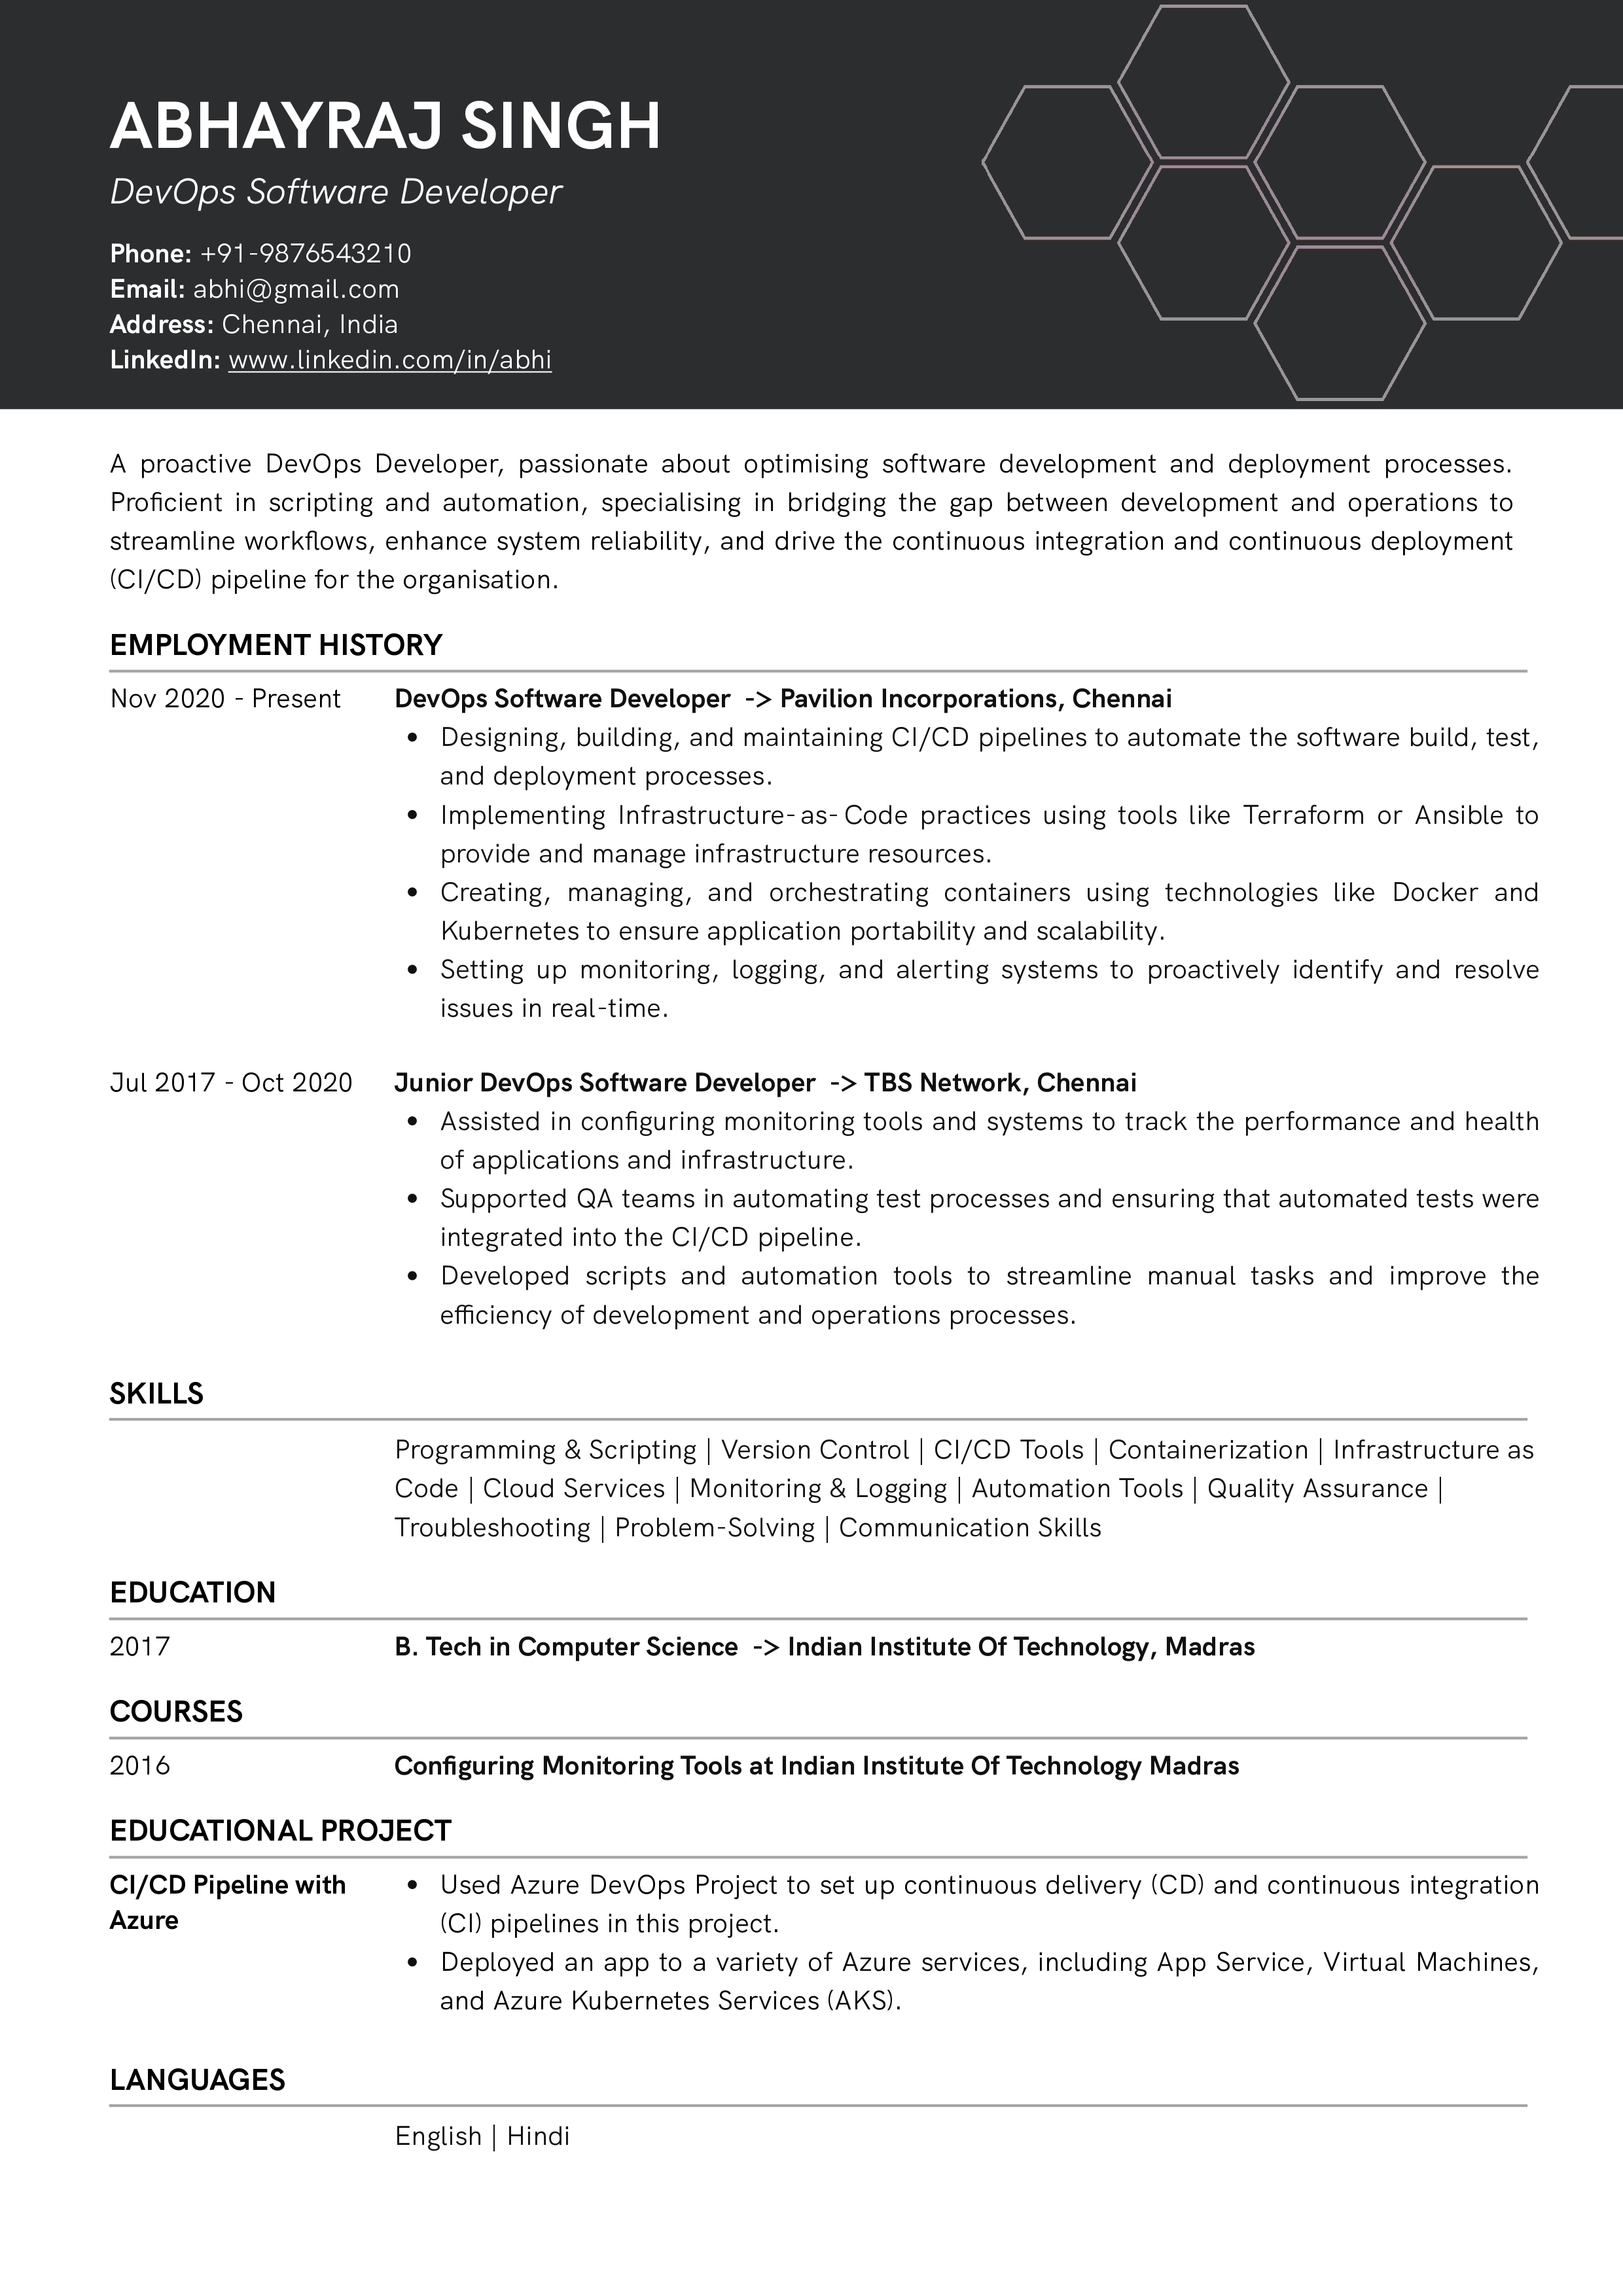 Sample Resume of DevOps Software Developer | Free Resume Templates & Samples on Resumod.co